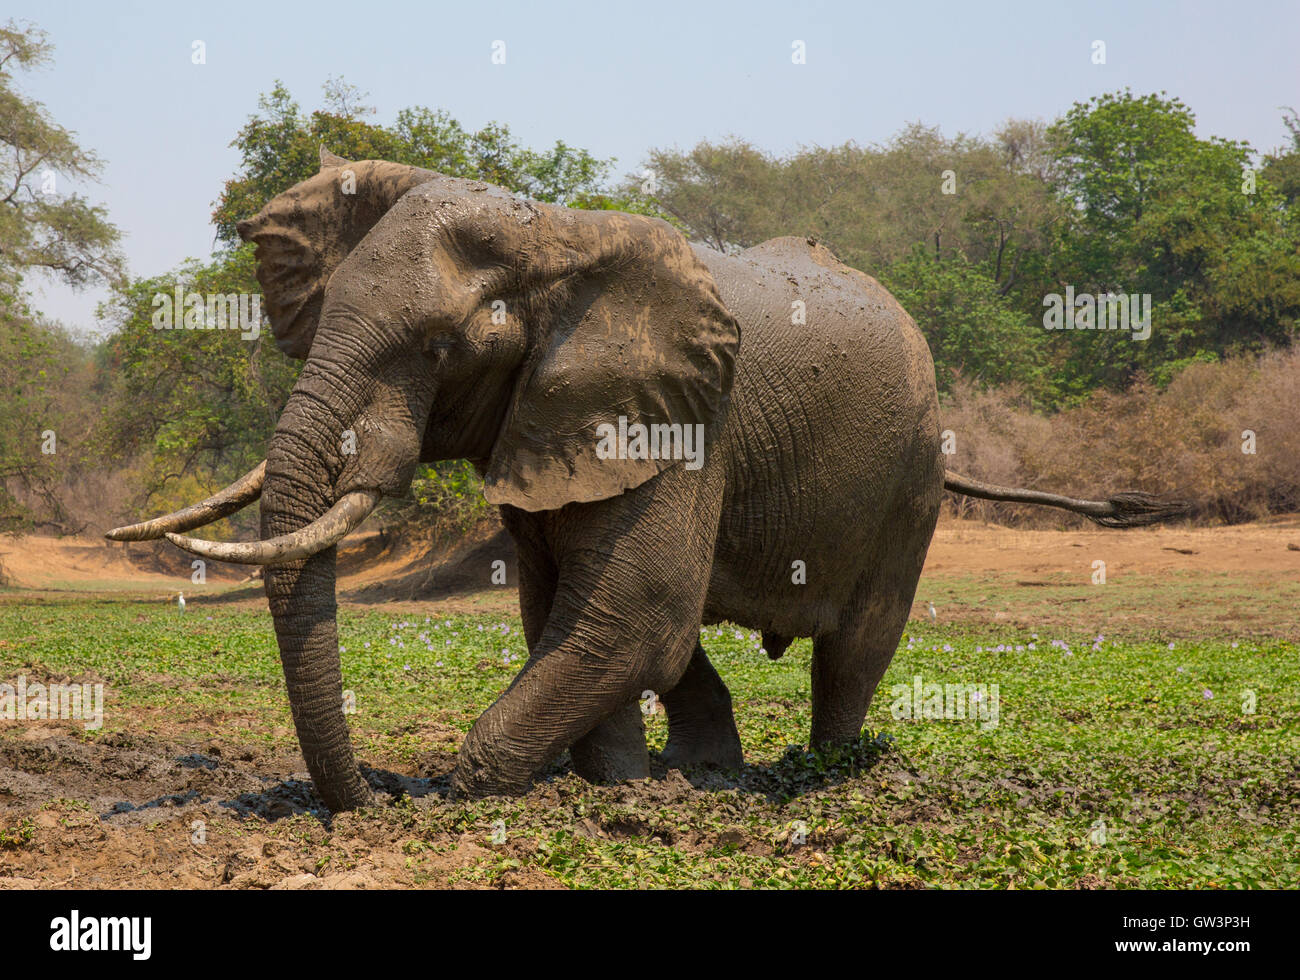 Bull del elefante africano (Loxodonta africana), tomar un baño de barro en el estanque con el jacinto de agua (Eicchornia crassipes) Foto de stock